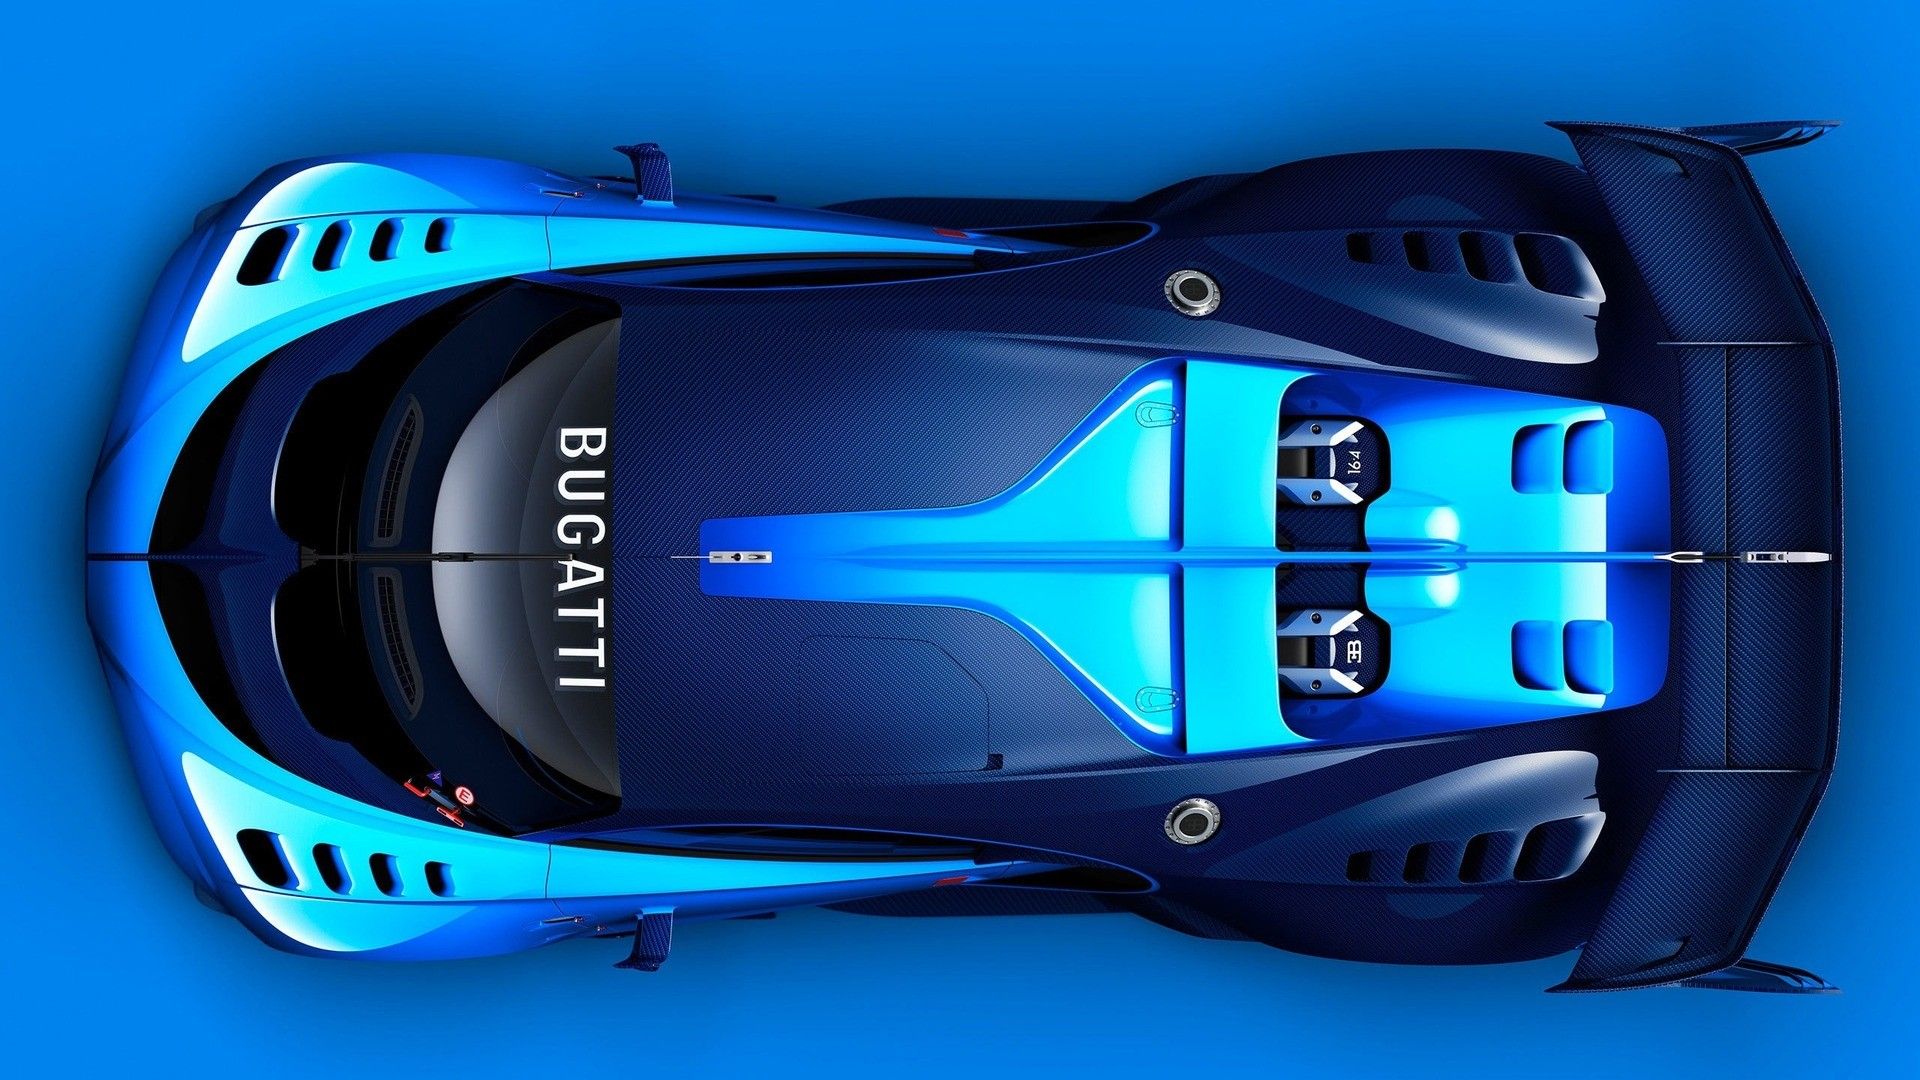 car, Sports Car, Concept Cars, Blue, Bugatti, Bugatti Concept, Bugatti Vision Gran Turismo, Blue Background, High View, Engines Wallpaper HD / Desktop and Mobile Background